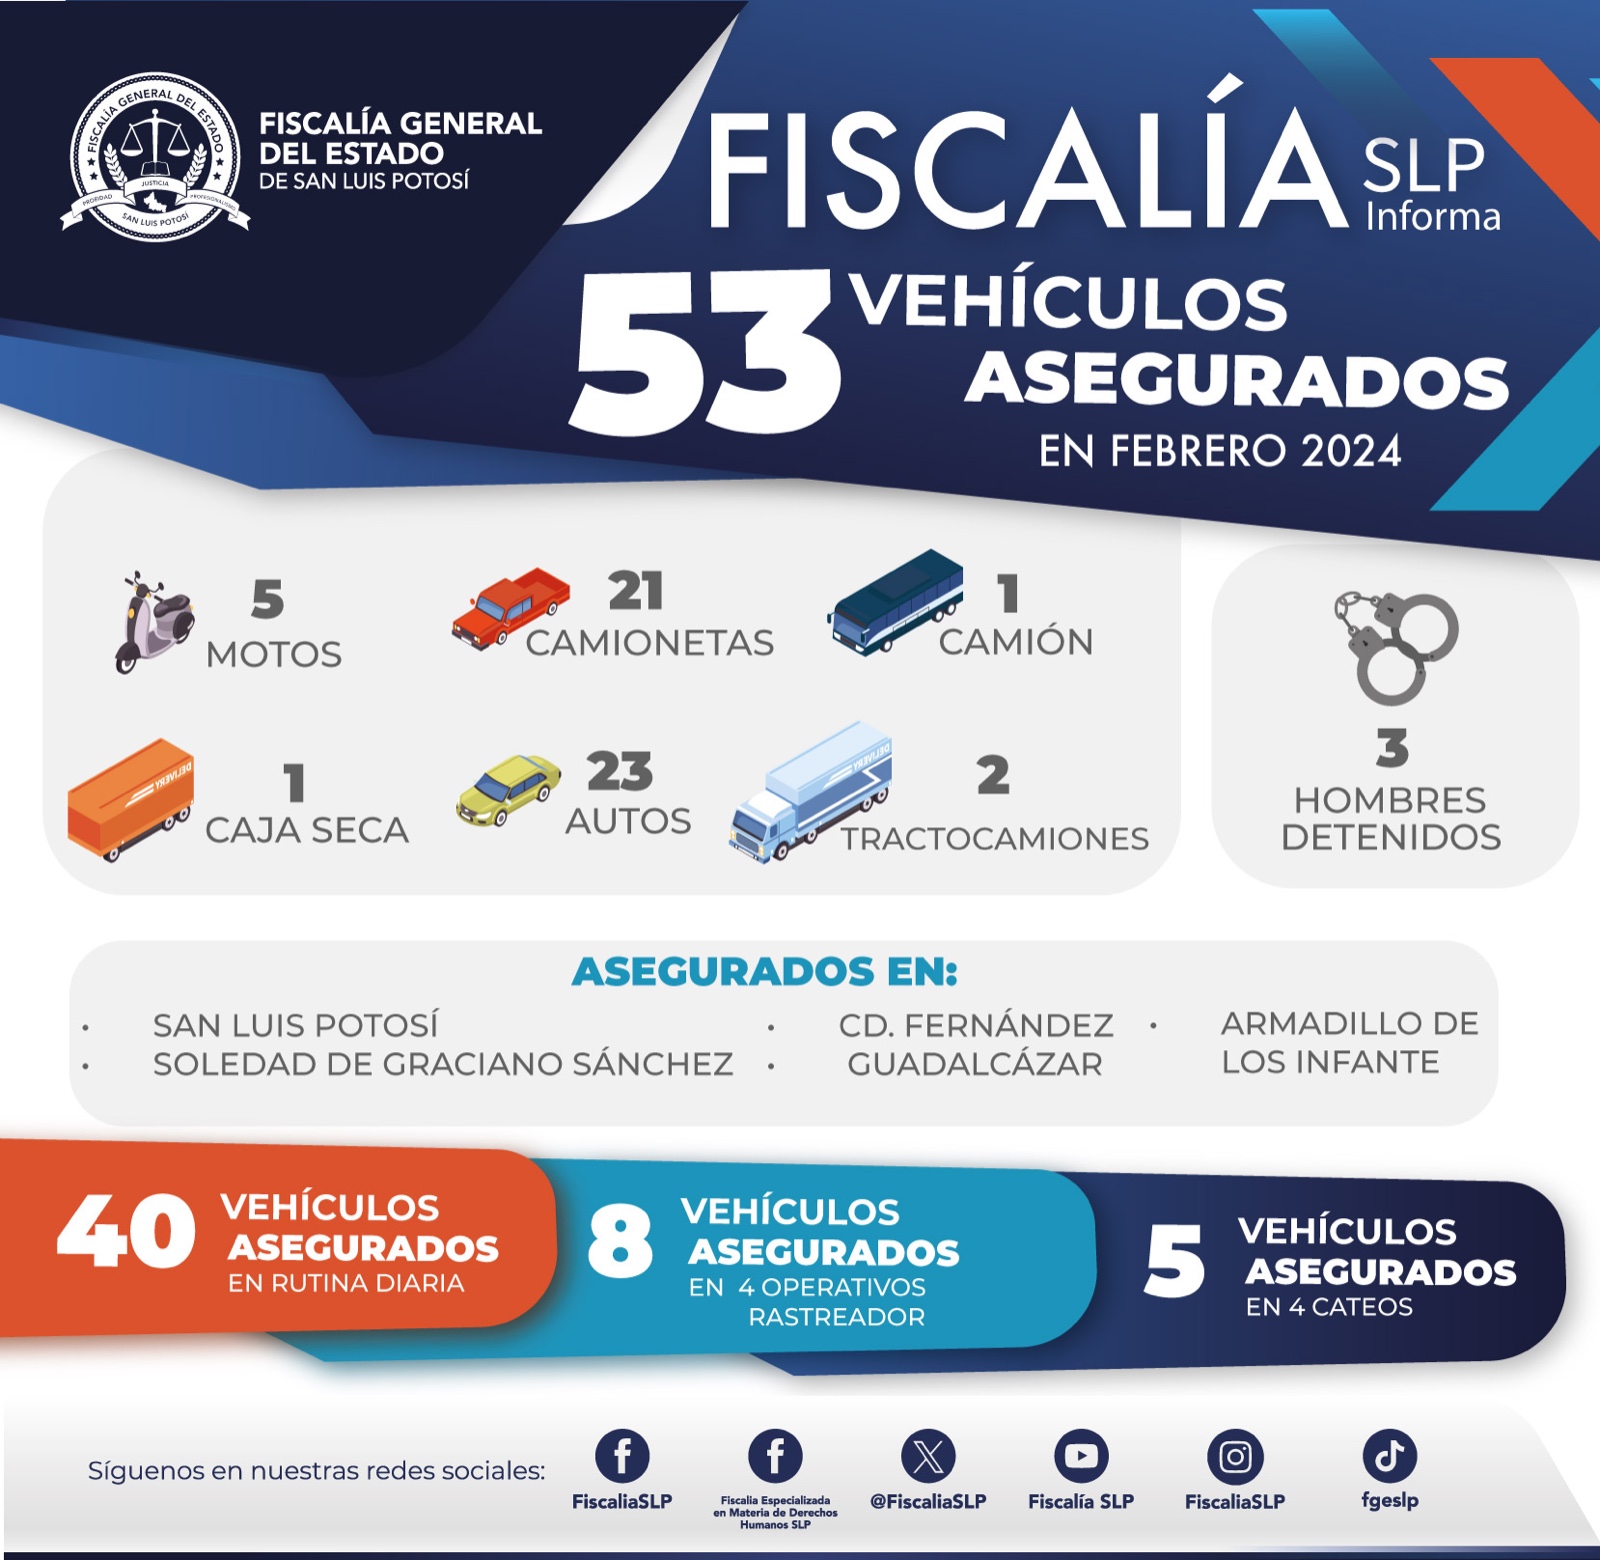 FGESLP lograron asegurar 53 vehículos con reporte de robo y alteración de serie durante el mes de febrero.